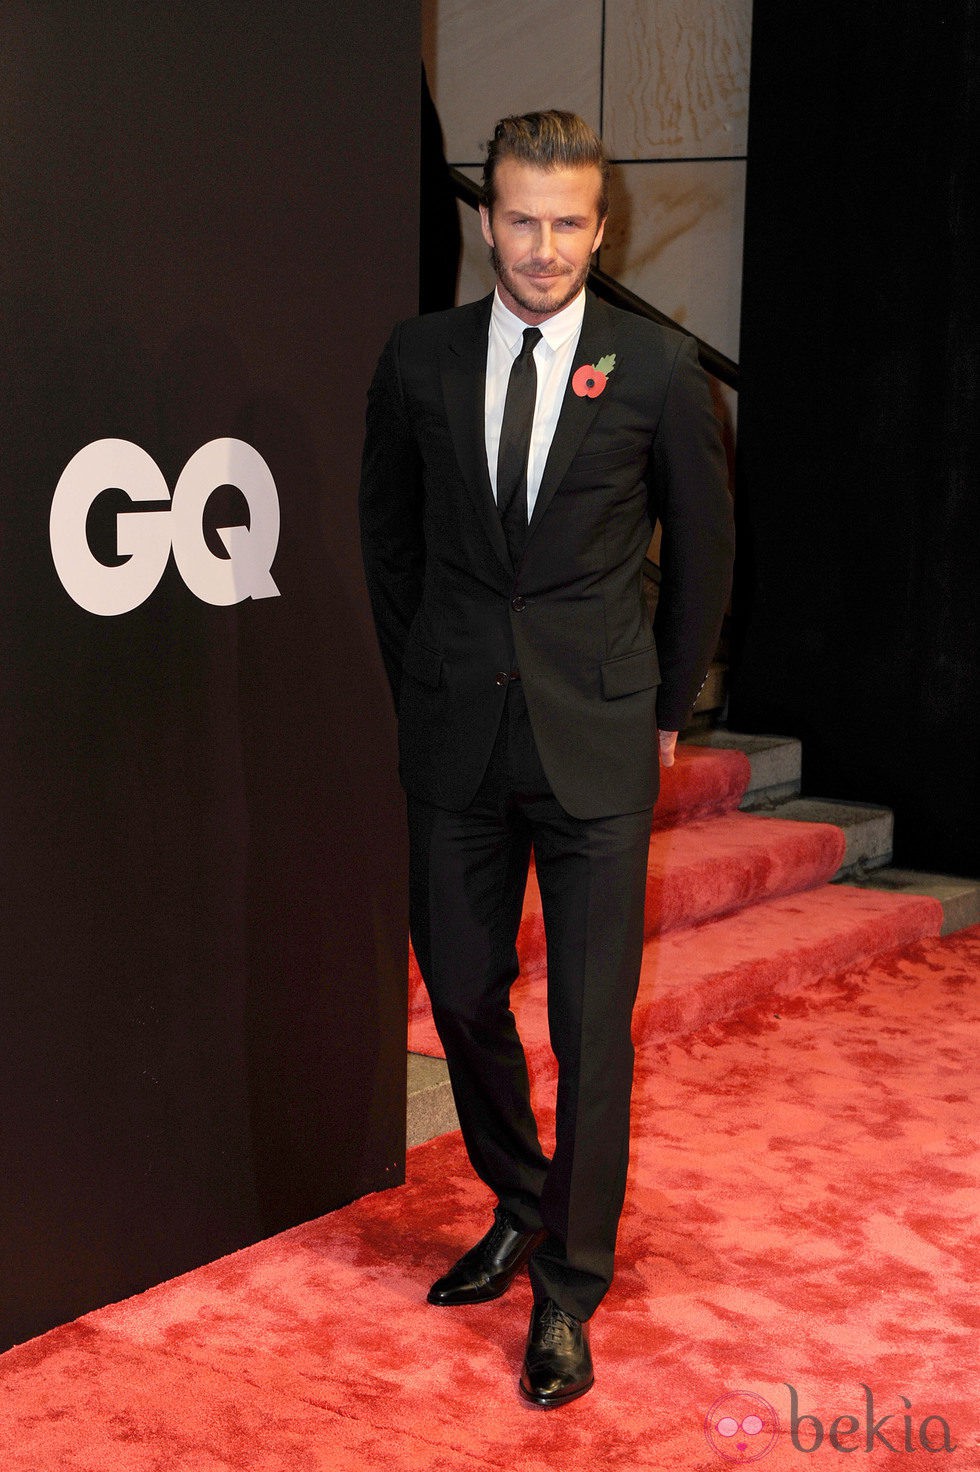 David Beckham trajeado en los premios GQ 2013